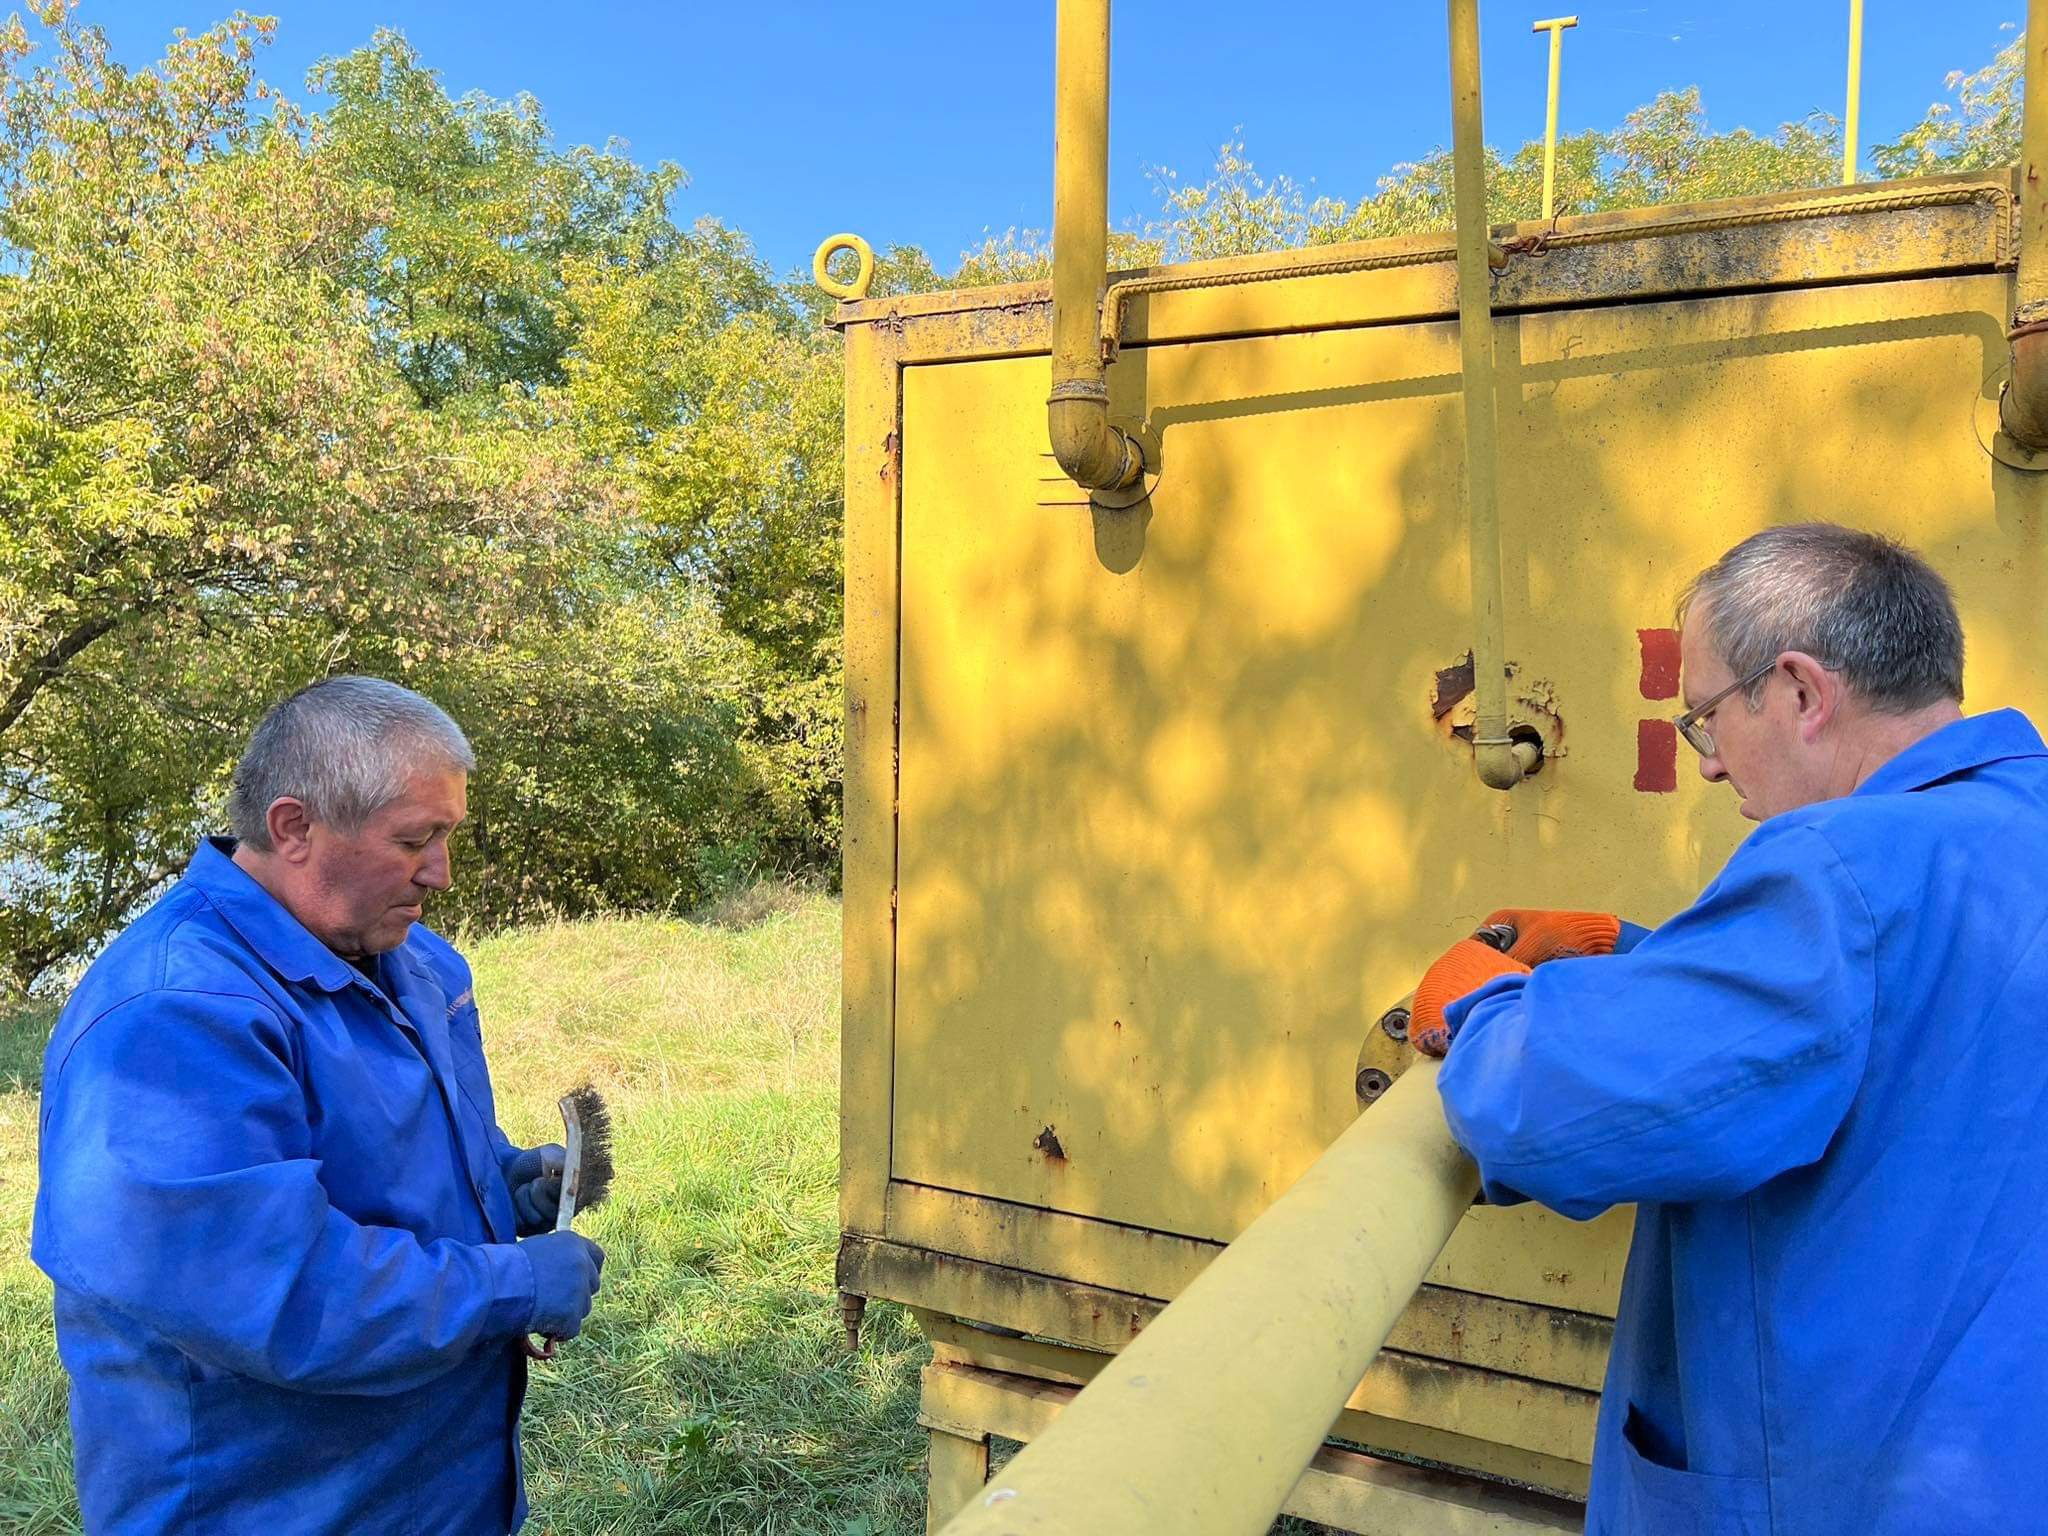 Зафіксовано три пошкодження об'єктів системи газопостачання в Костянтинівці протягом тижня